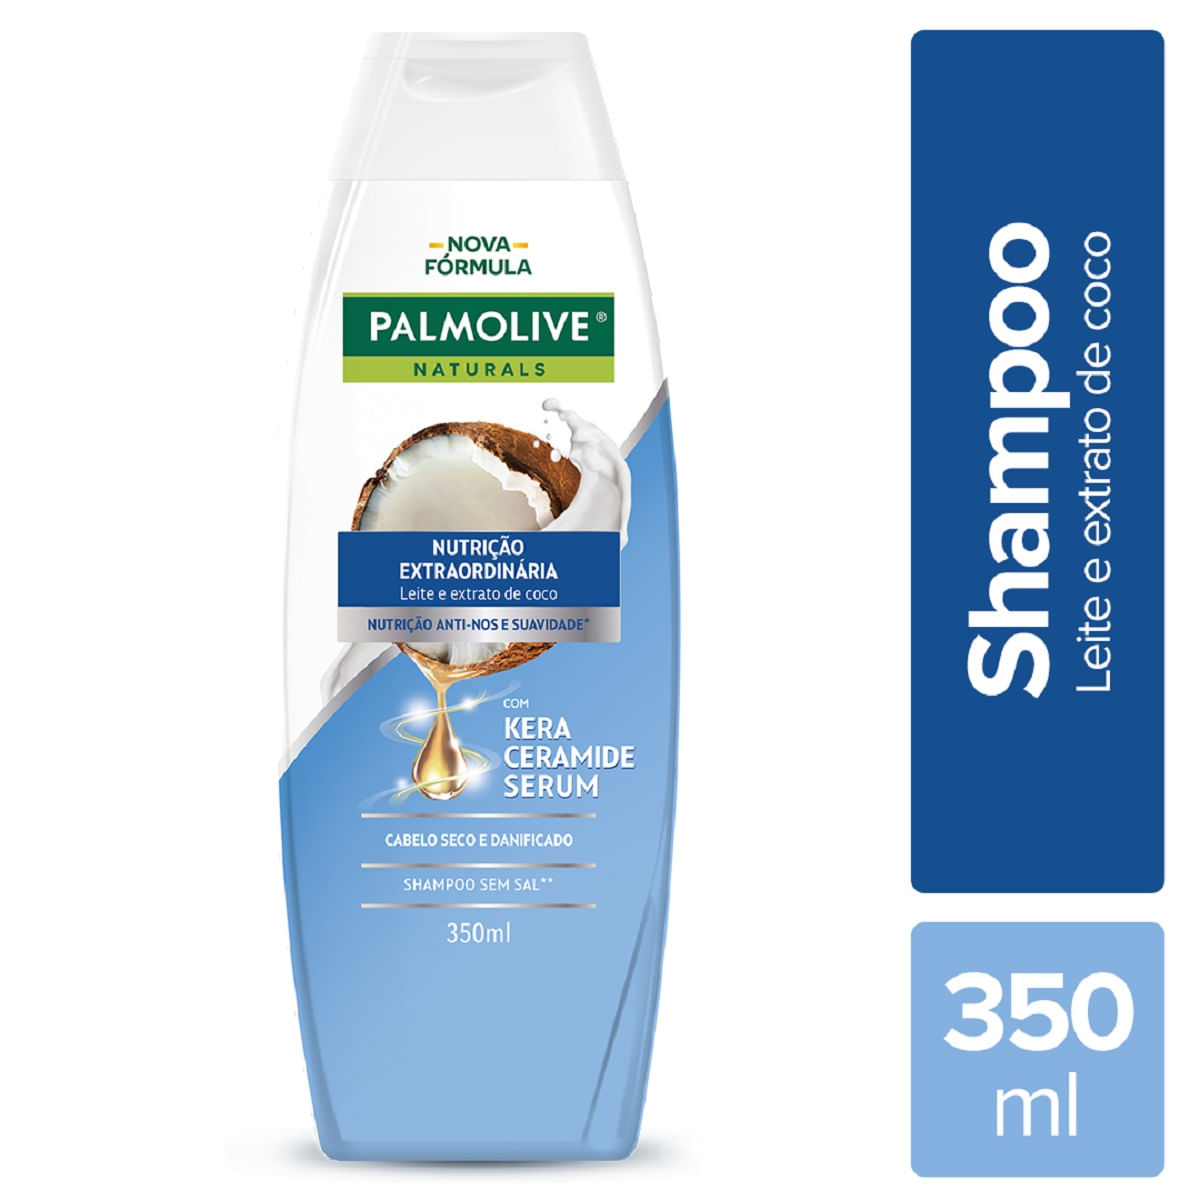 shampoo-palmolive-naturals-maciez-prolongada-sem-sal-350ml-1.jpg